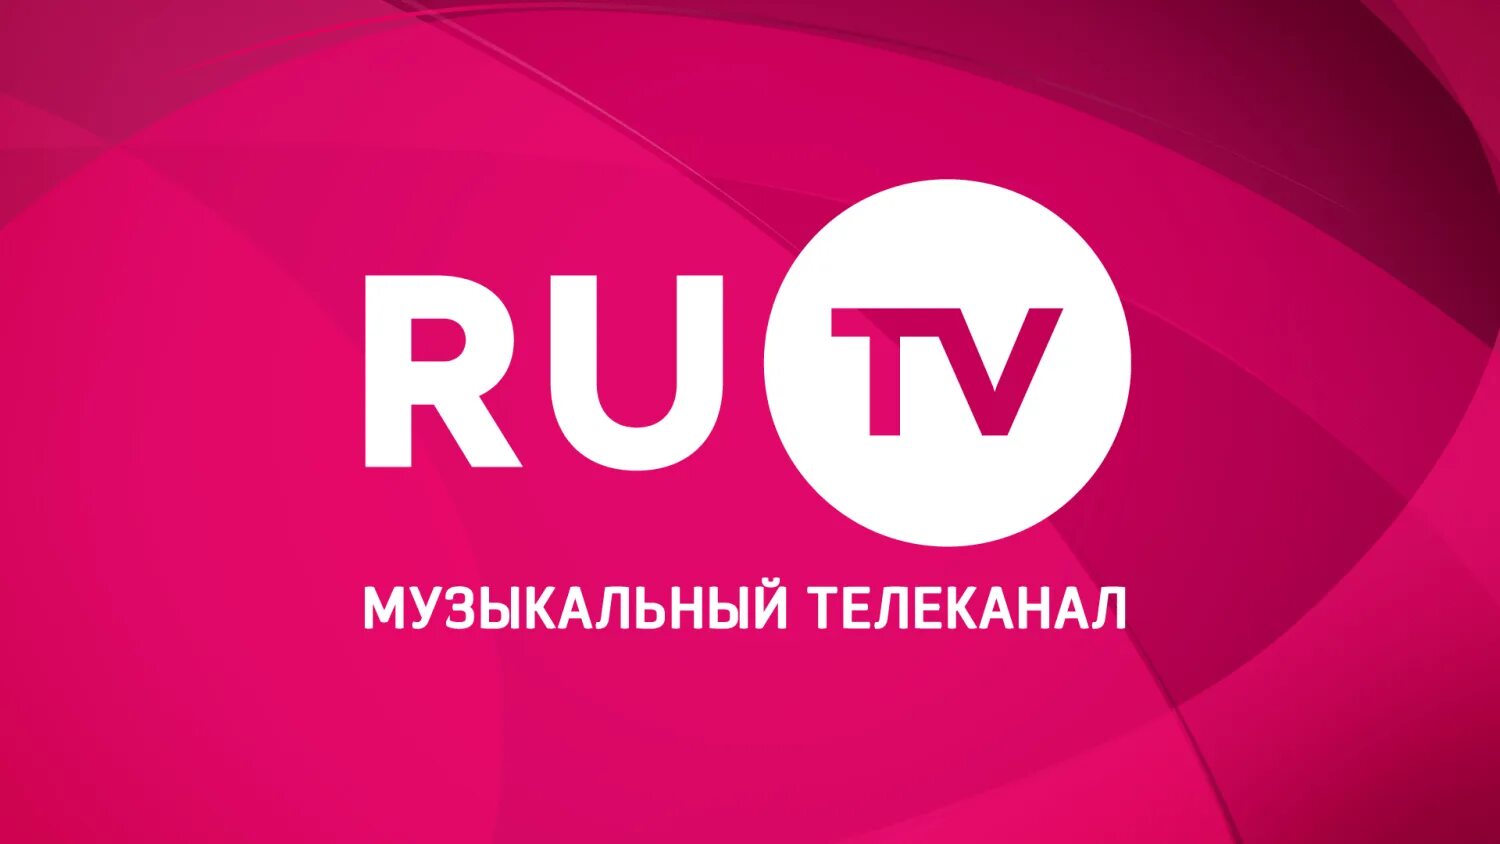 Показать музыкальный канал. Ру ТВ. Ру ТВ логотип. Телеканал ru TV. Ру ТВ музыкальный канал.